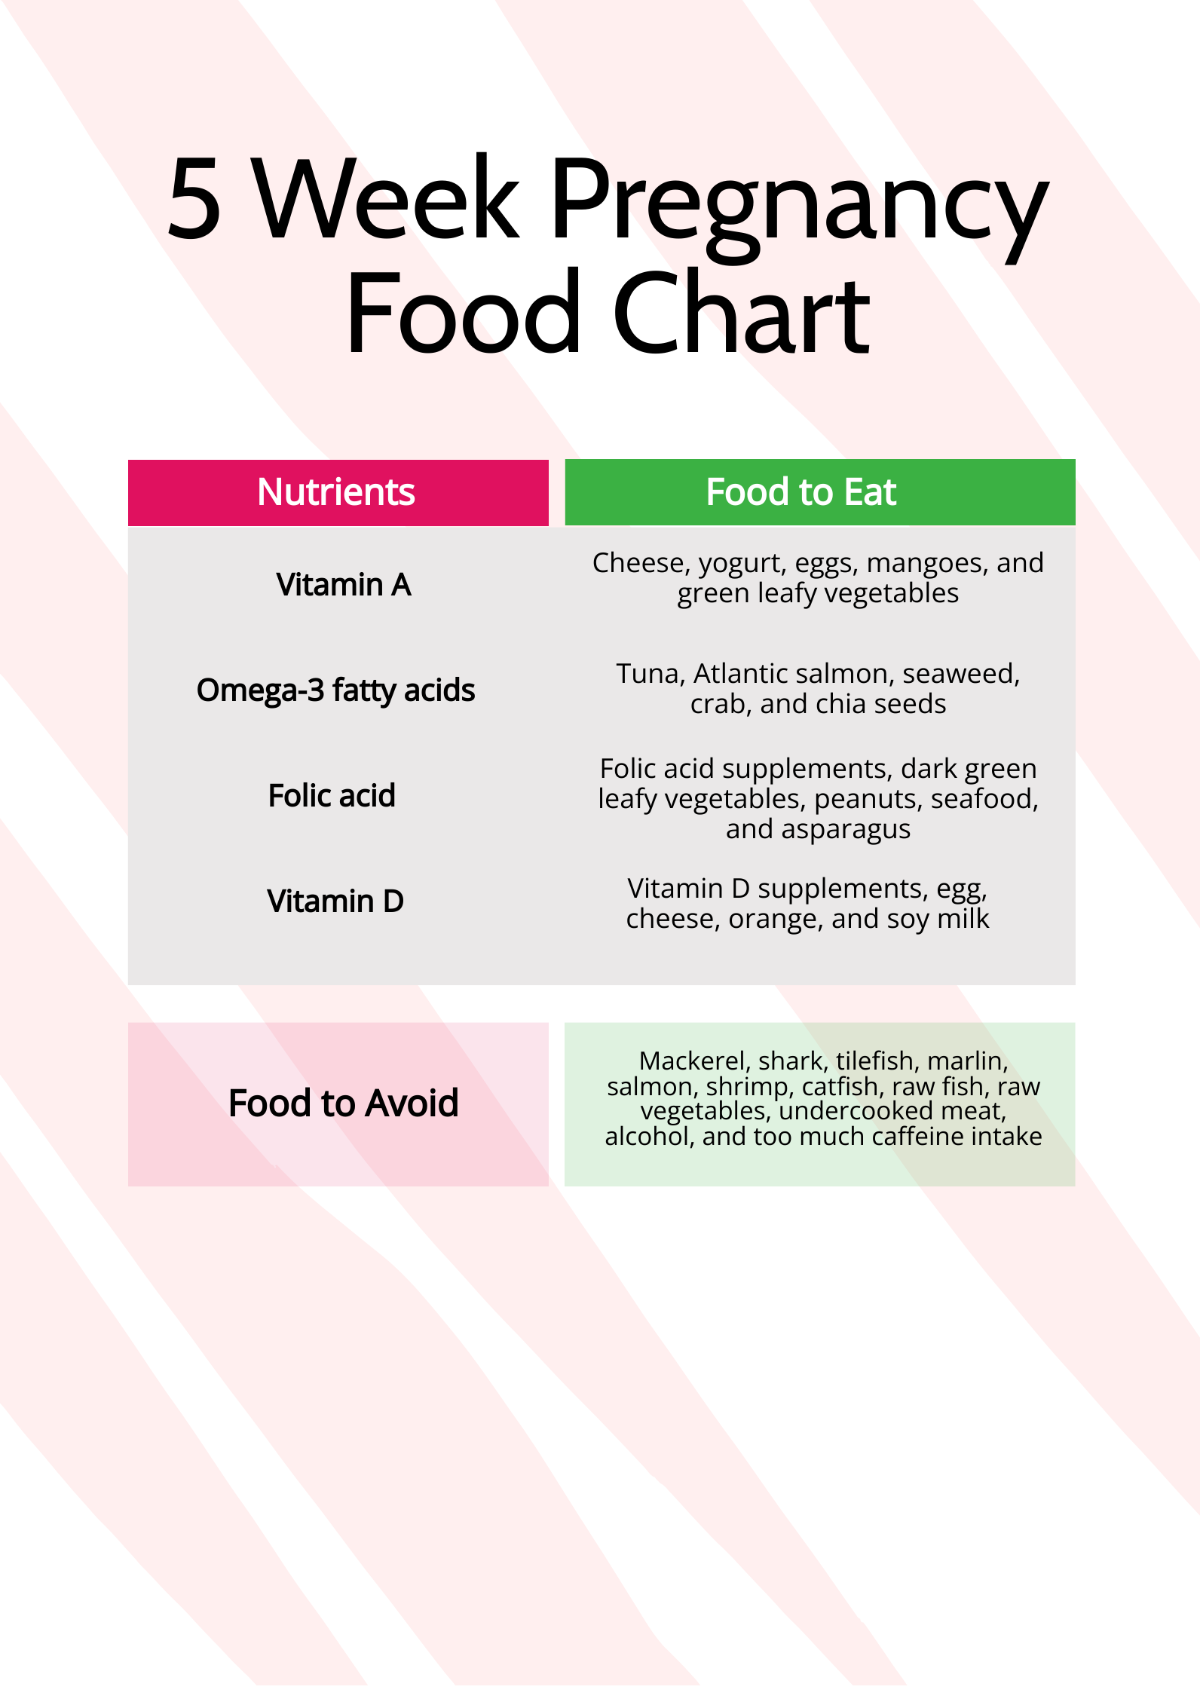 5 Week Pregnancy Food Chart Template